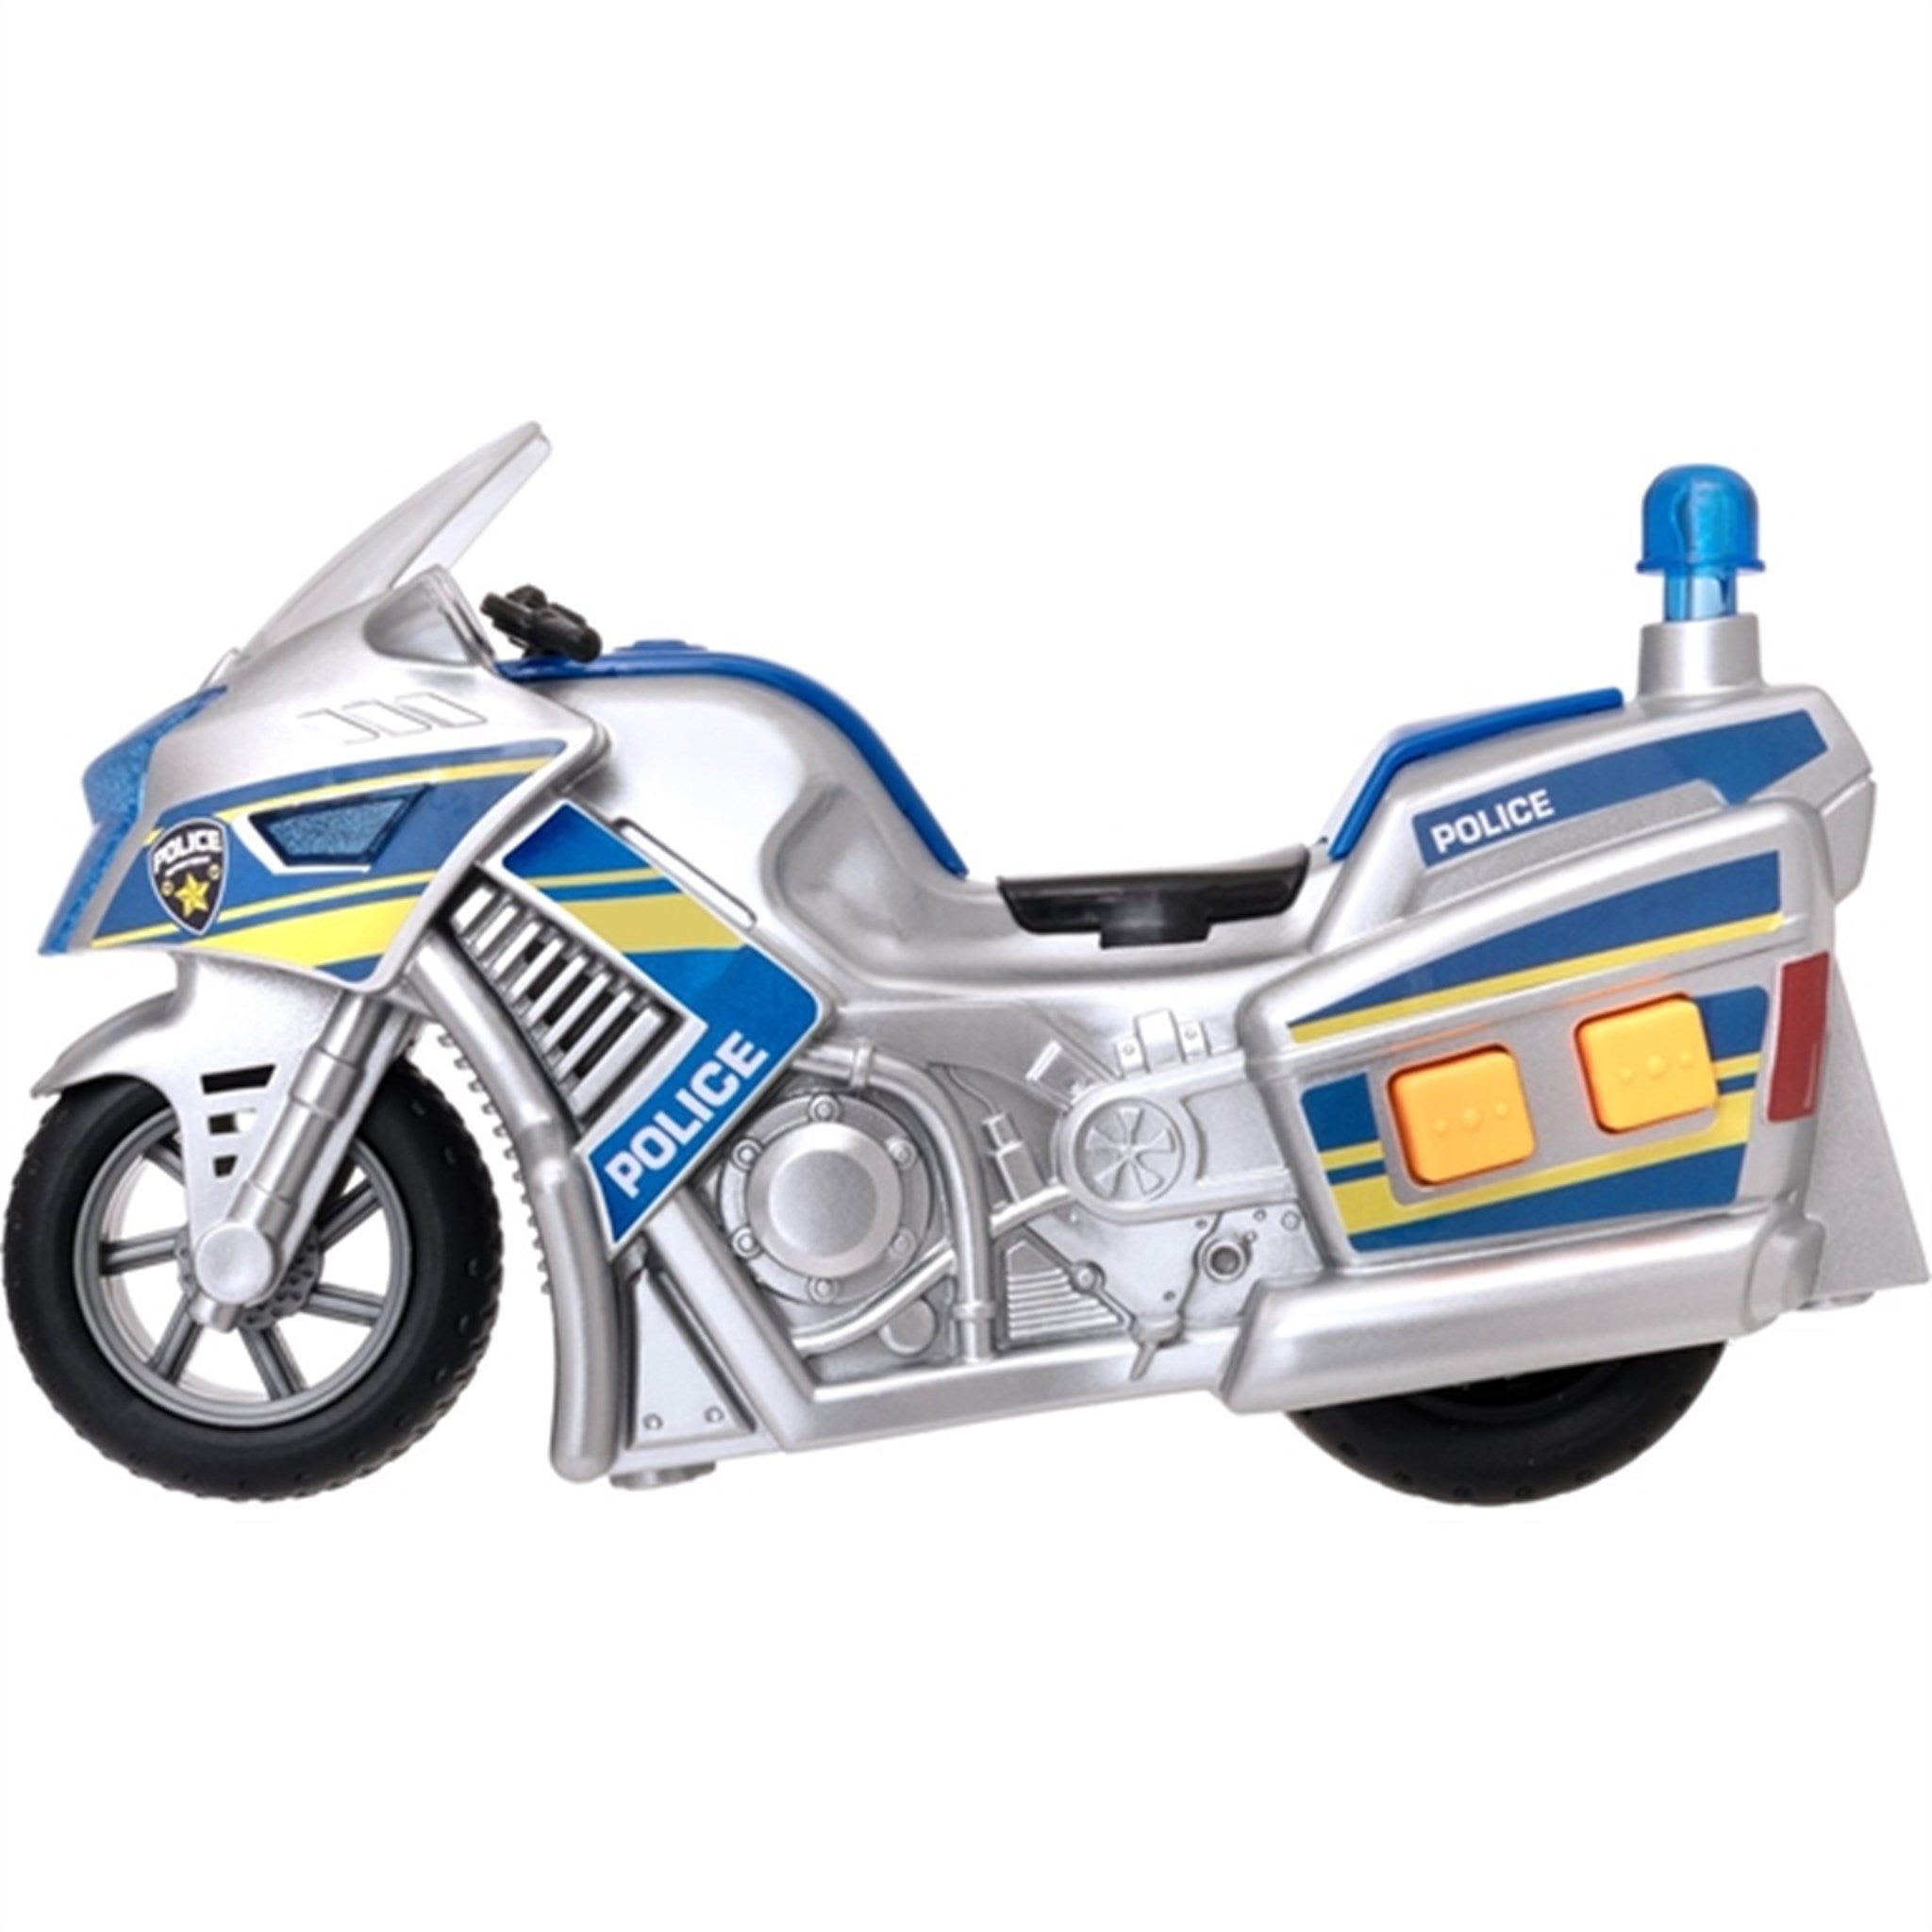 Teamsterz Small L&S Police Motor Bike 3